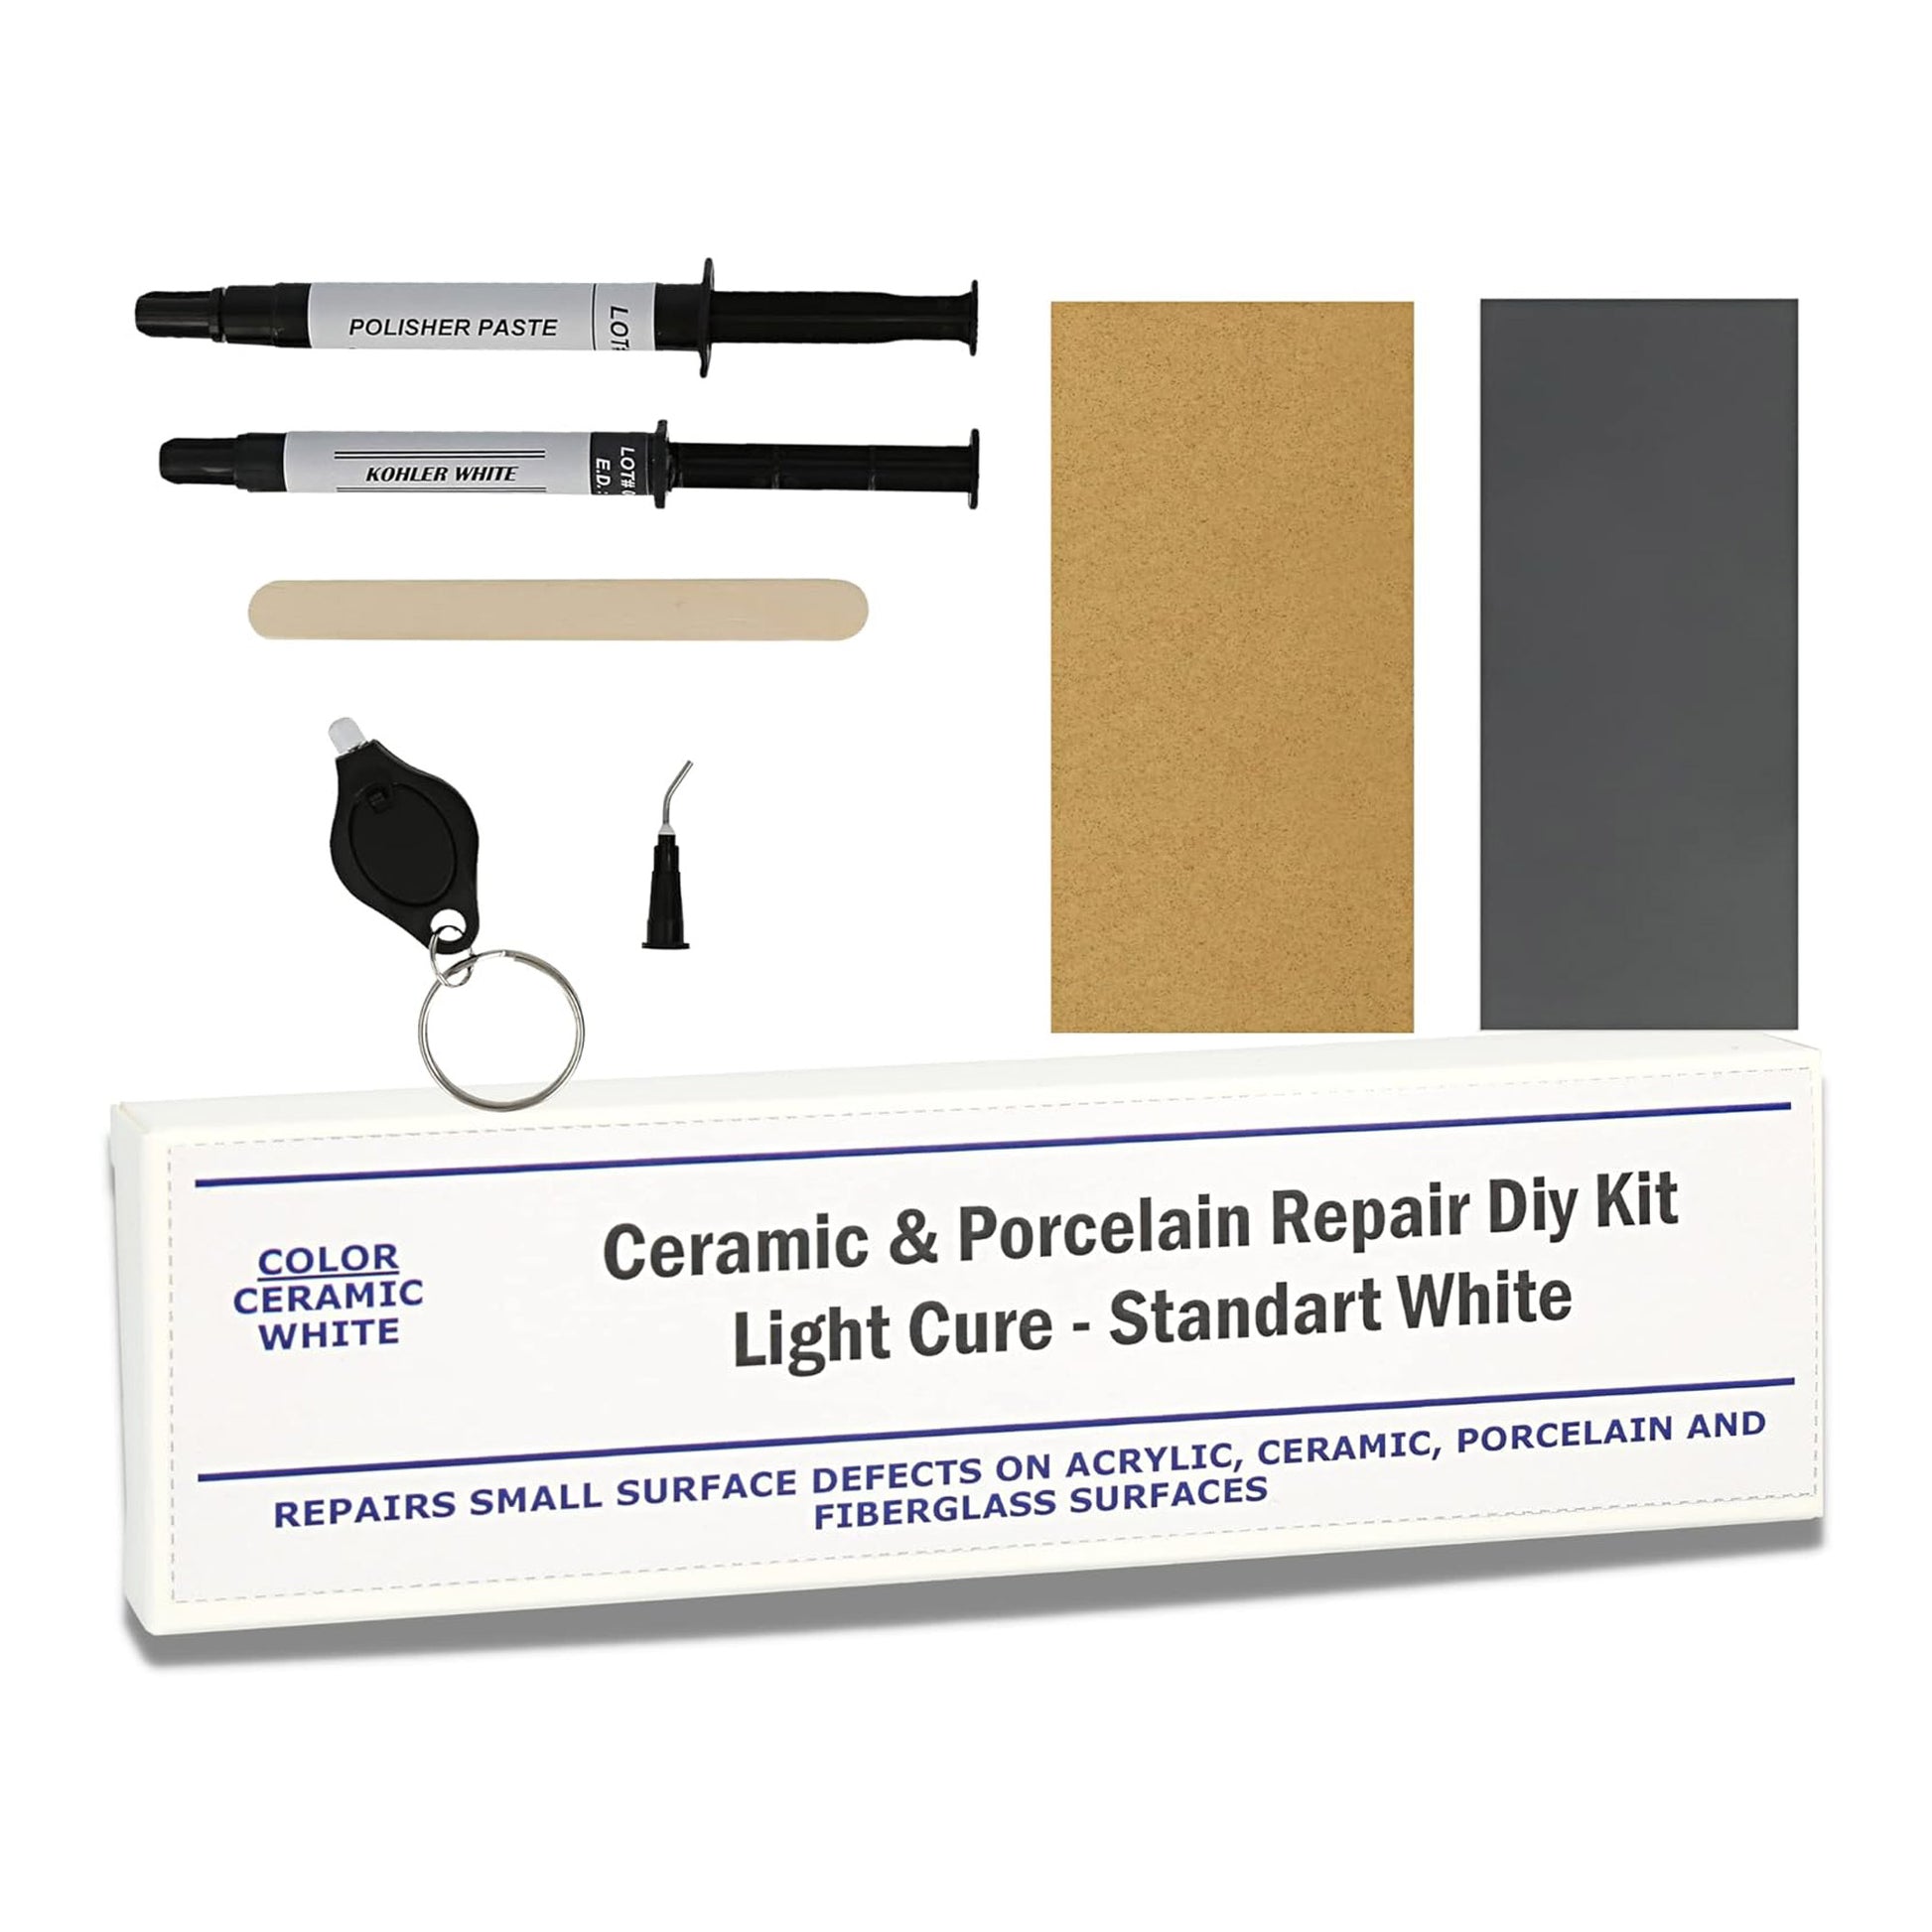 Clear Light Cure Acrylic Repair Kit – HIMG® Surface Repair